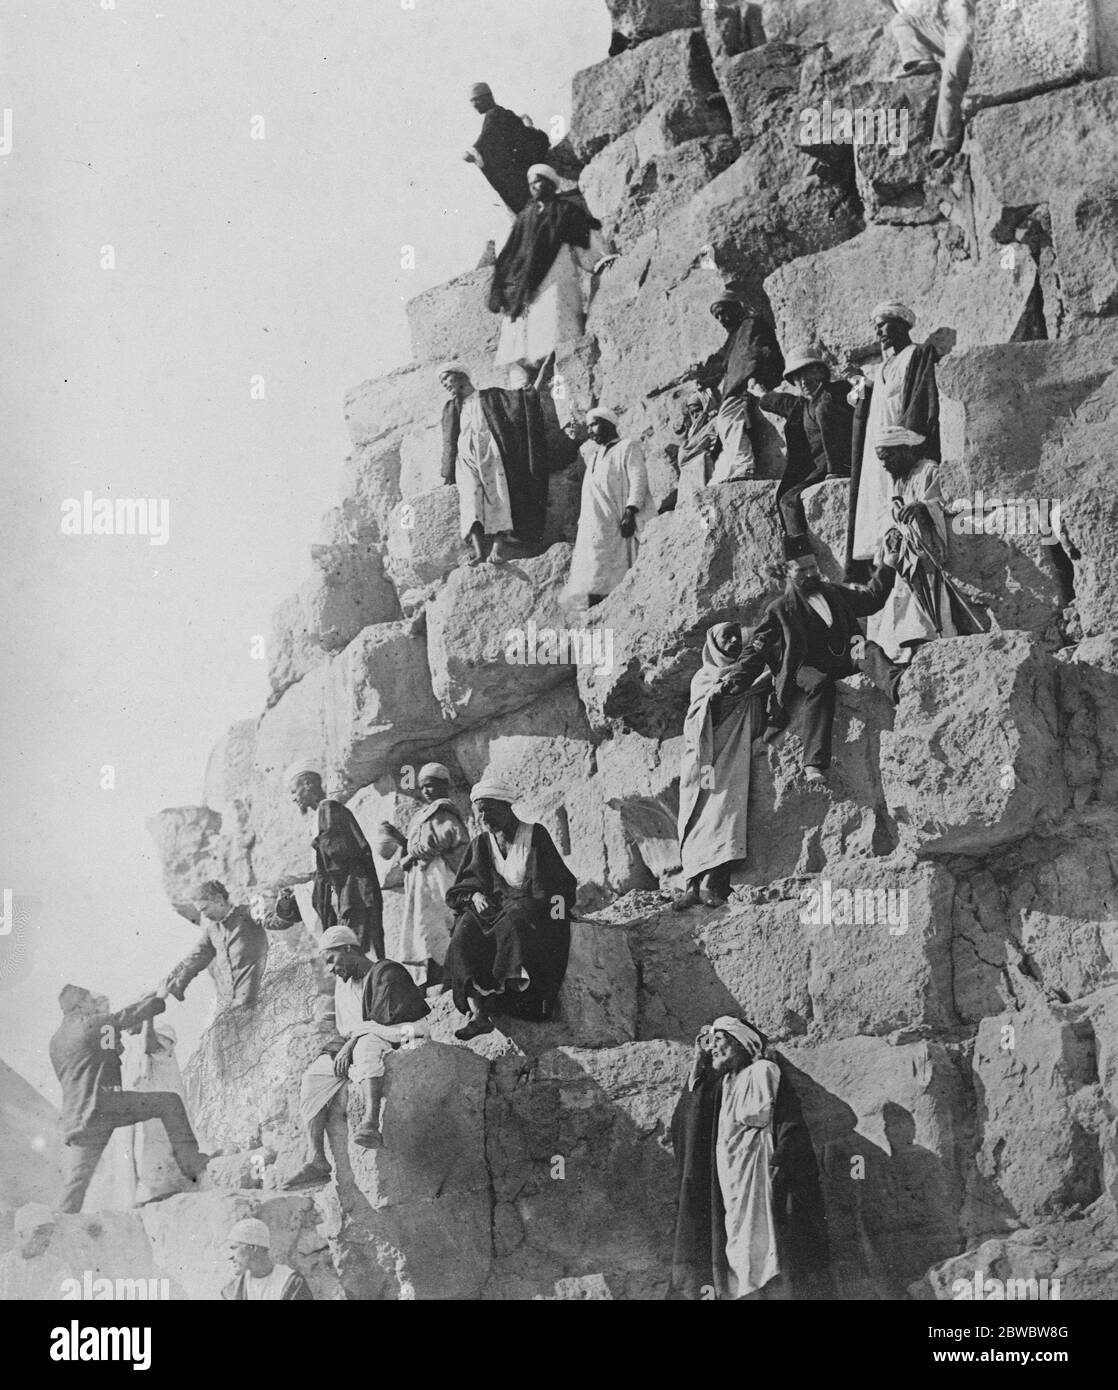 Yhe grande pyramide de Cheops , Egypte. La grande pyramide de Cheops , sur laquelle un touriste a perdu la vie en glissant et en roulant des centaines de pieds . 7 avril 1926 Banque D'Images